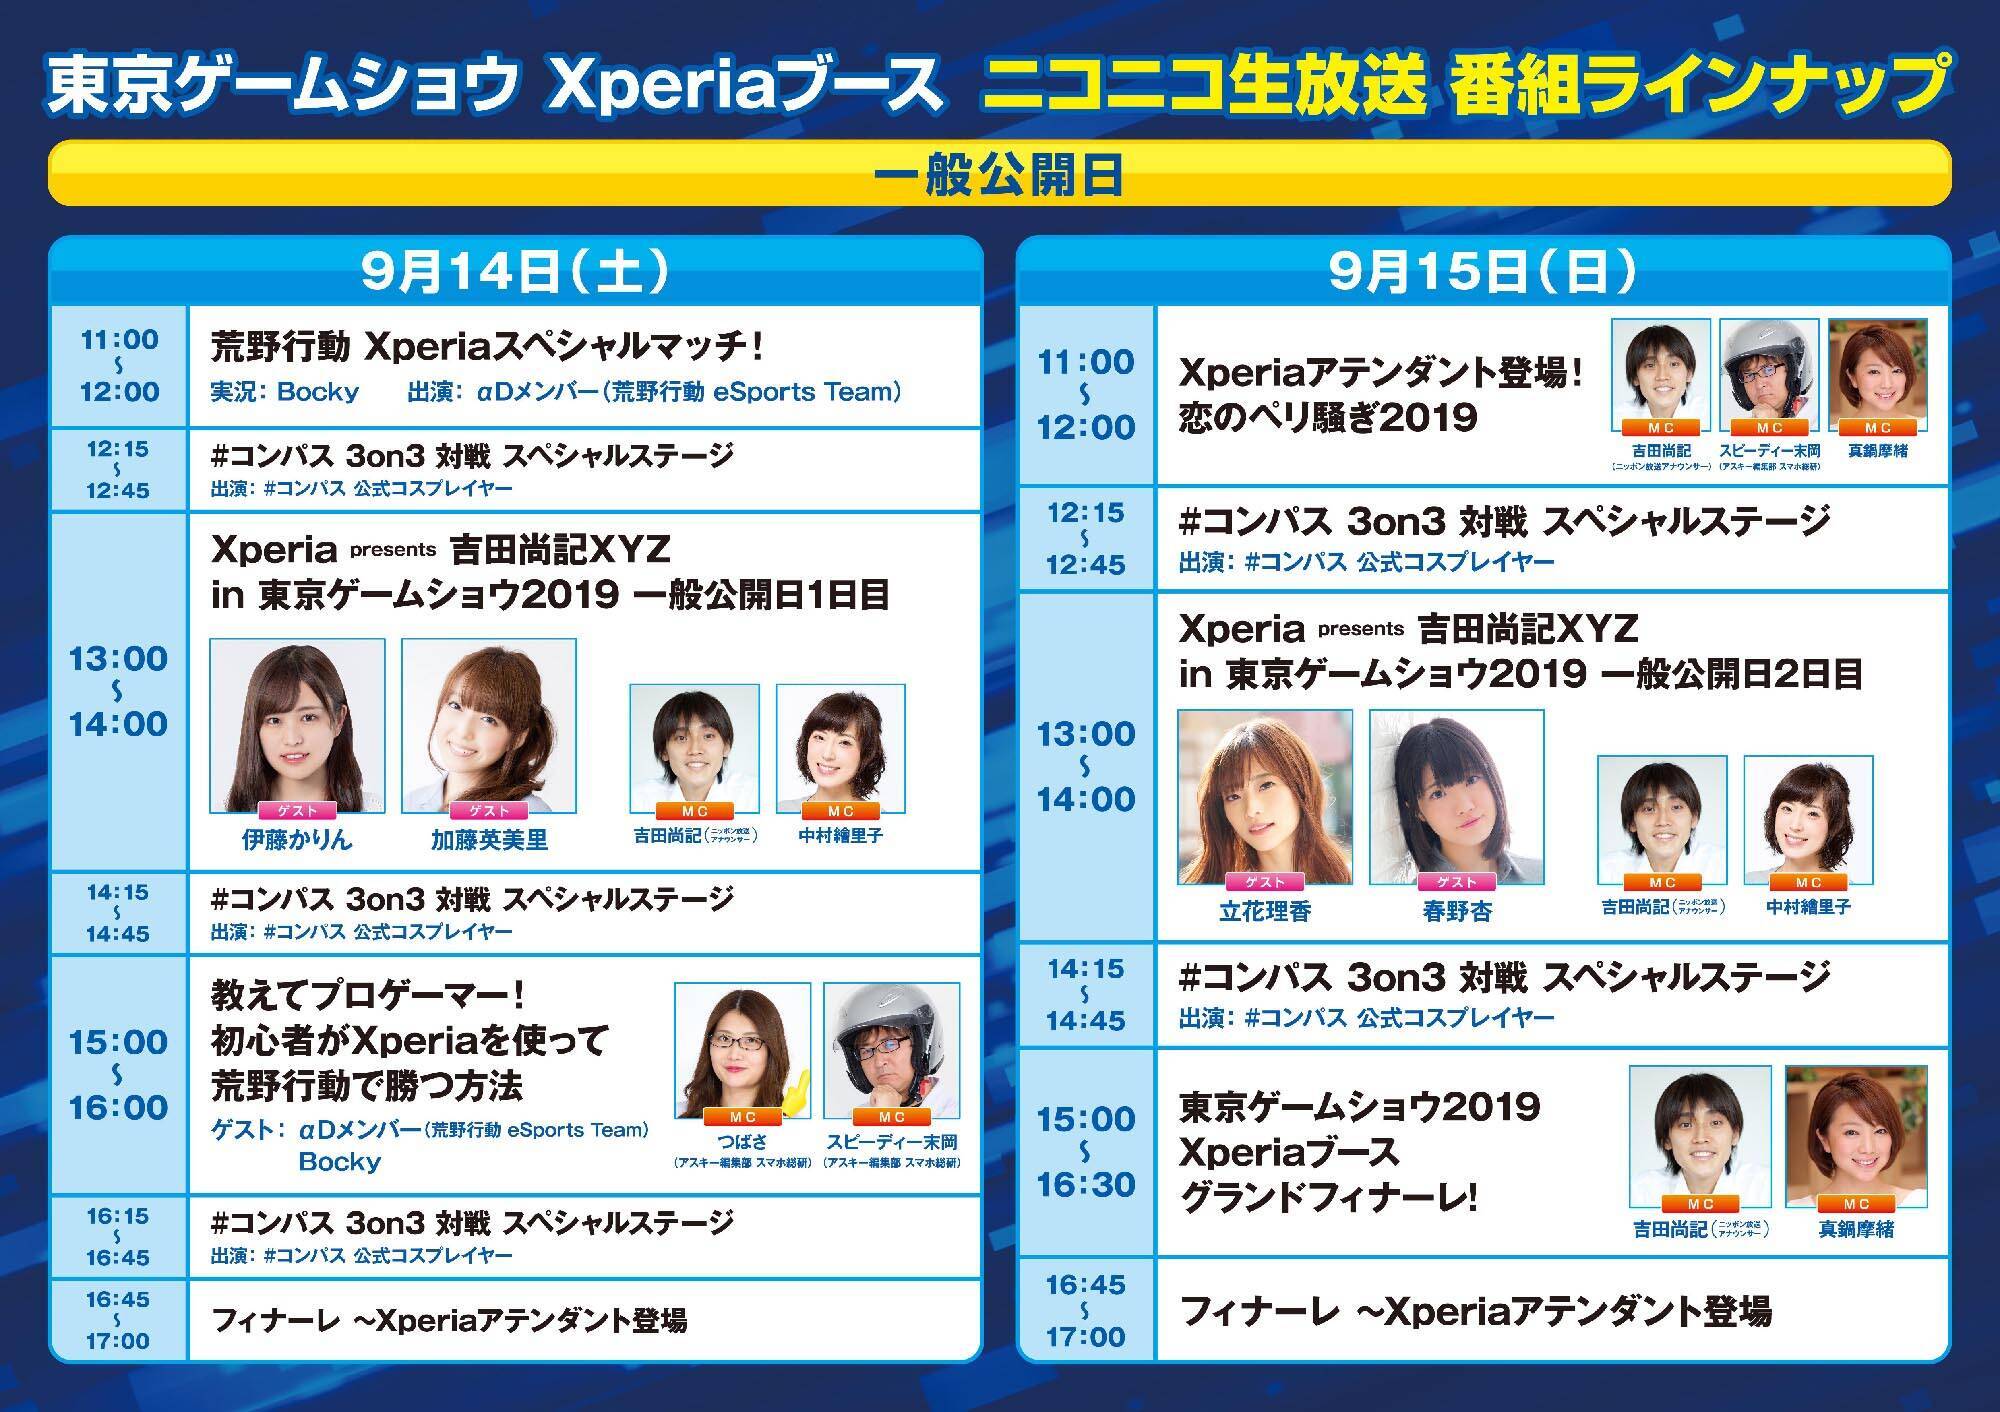 東京ゲームショウ Xperia ブースがガチでおもしろい 21 9